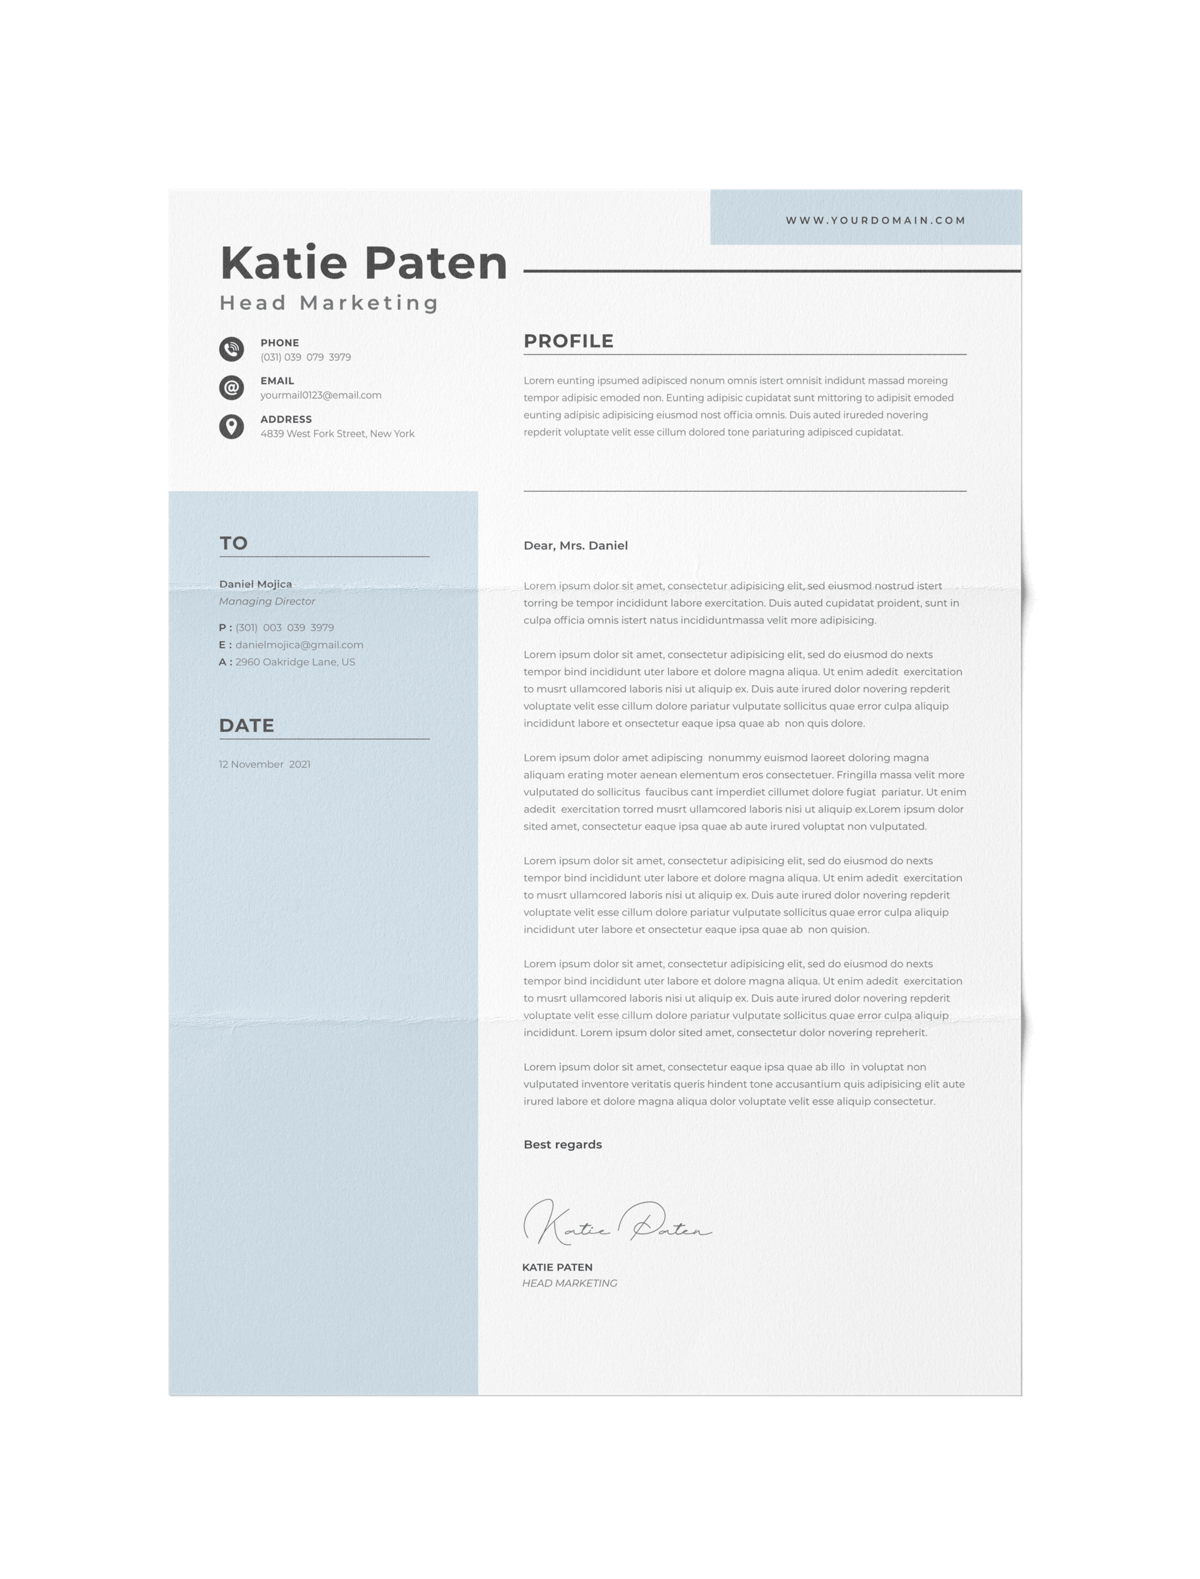 CV #126 Katie Paten